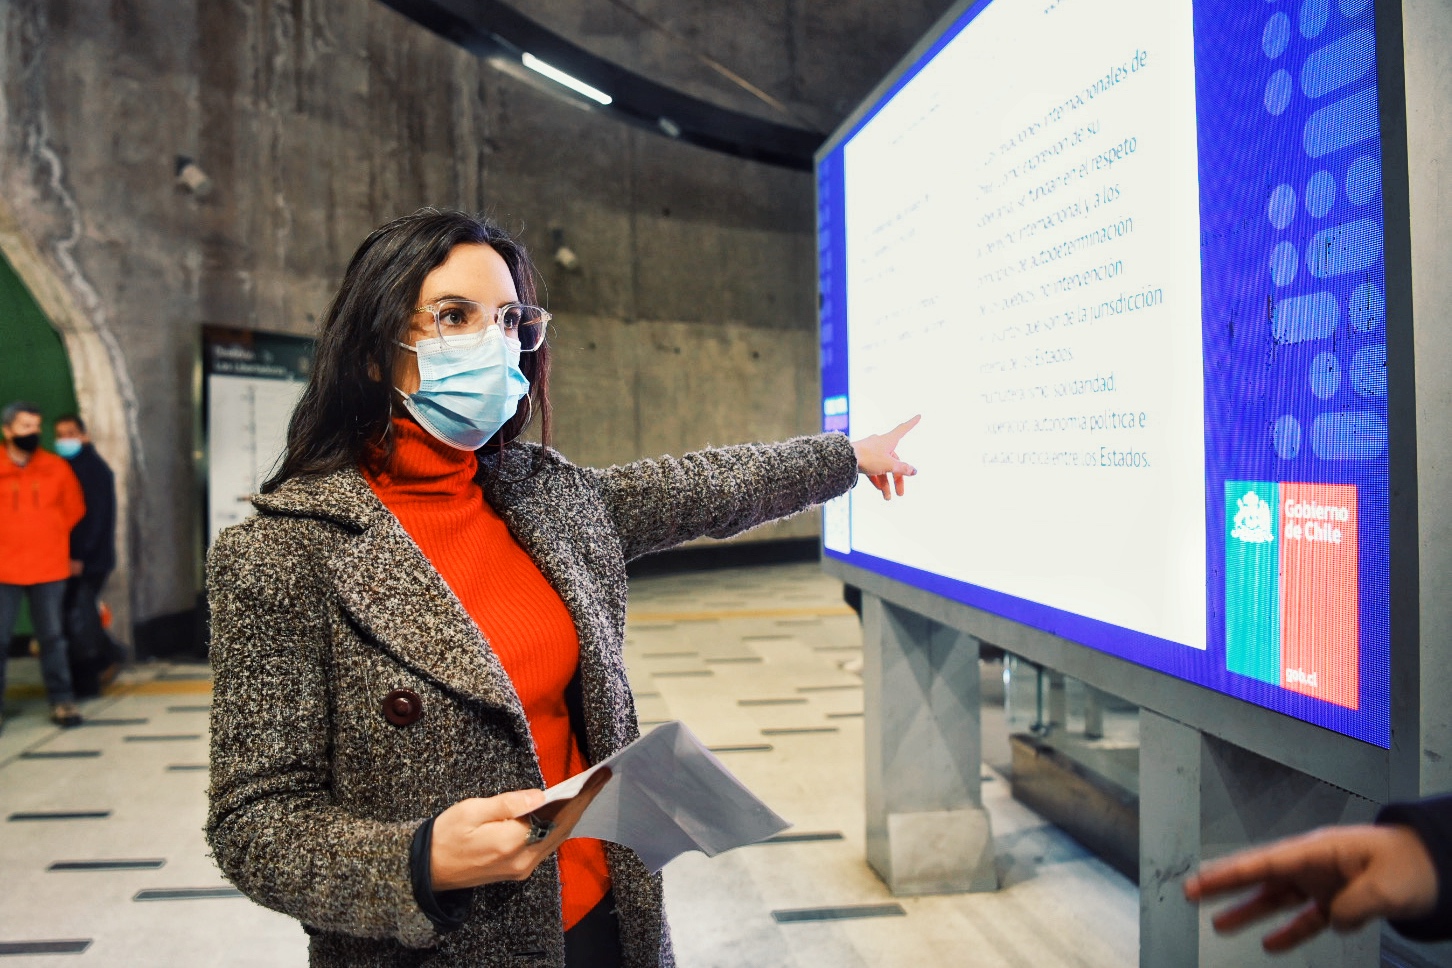  Chile Vota Informado: pantallas del Metro de Santiago exhibirán el texto completo de la propuesta de nueva Constitución